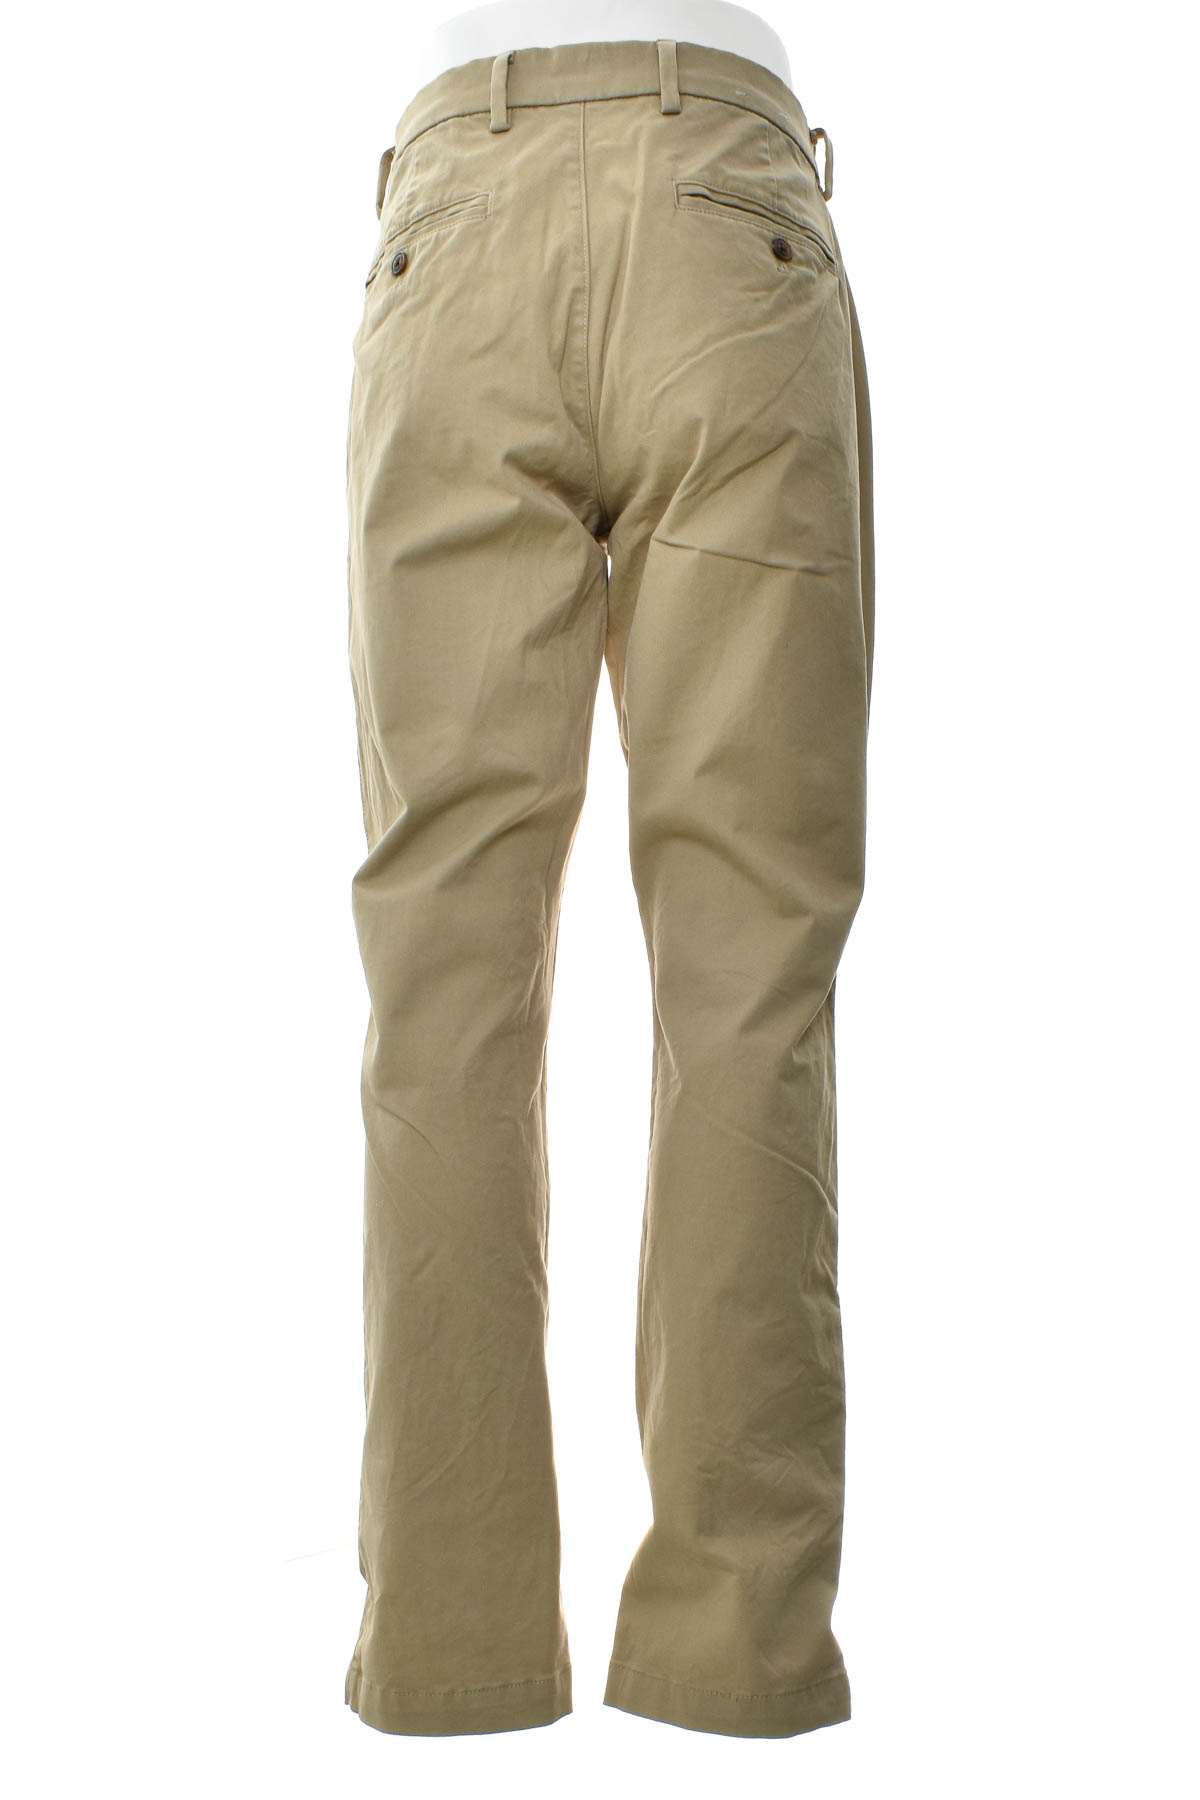 Pantalon pentru bărbați - GAP - 1